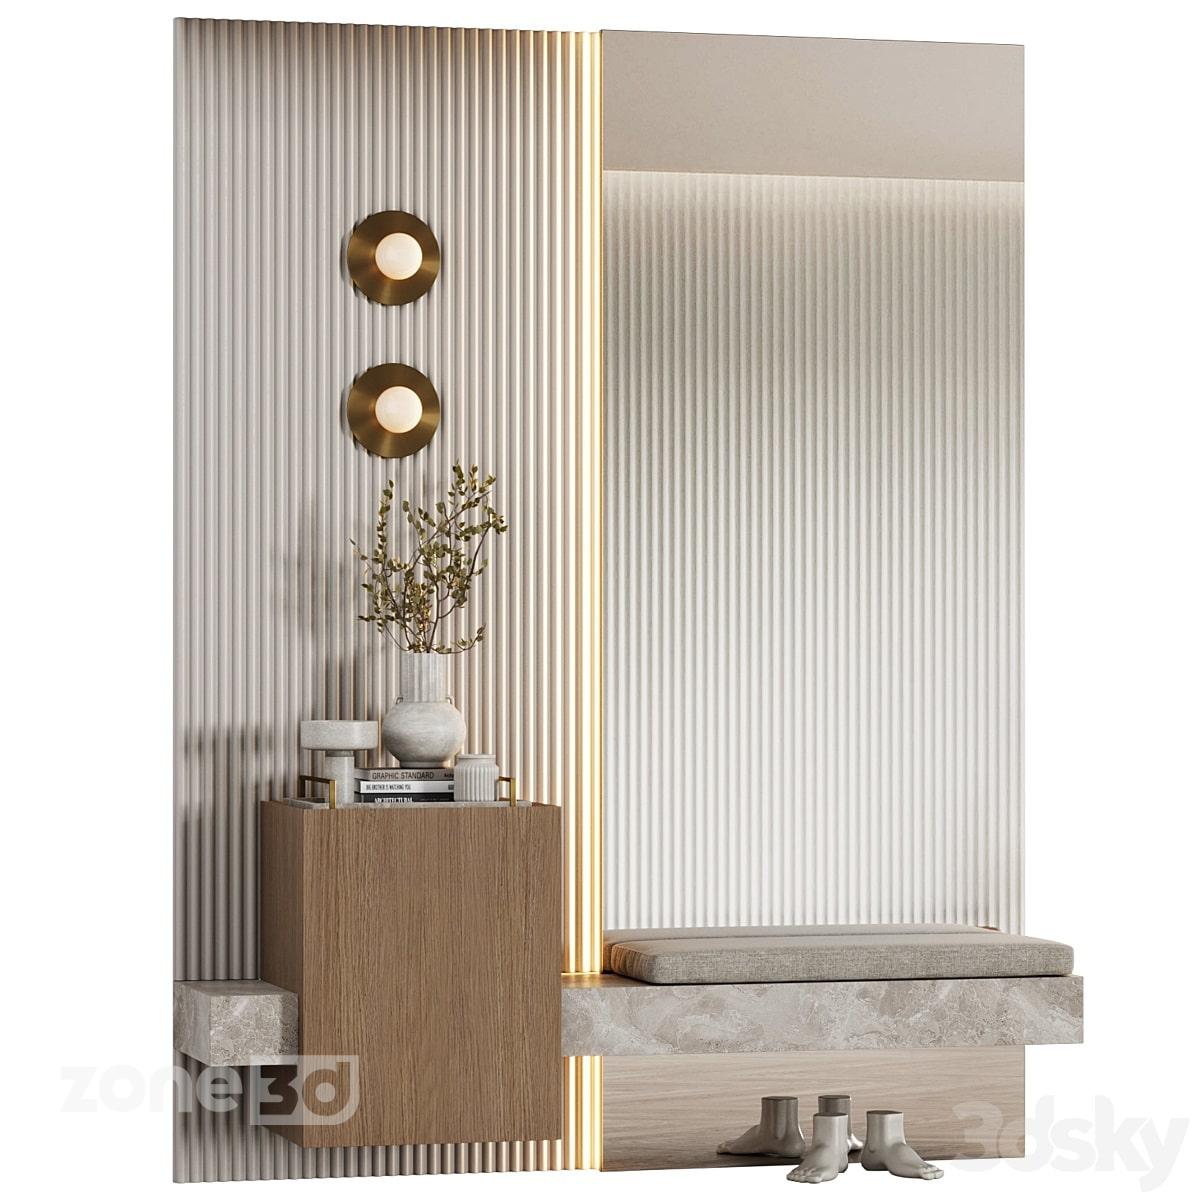 آبجکت آیینه دیواری به همراه مبلمان چوبی و سنگی مدرن راهرو با لوازم دکوری و چراغ دیواری